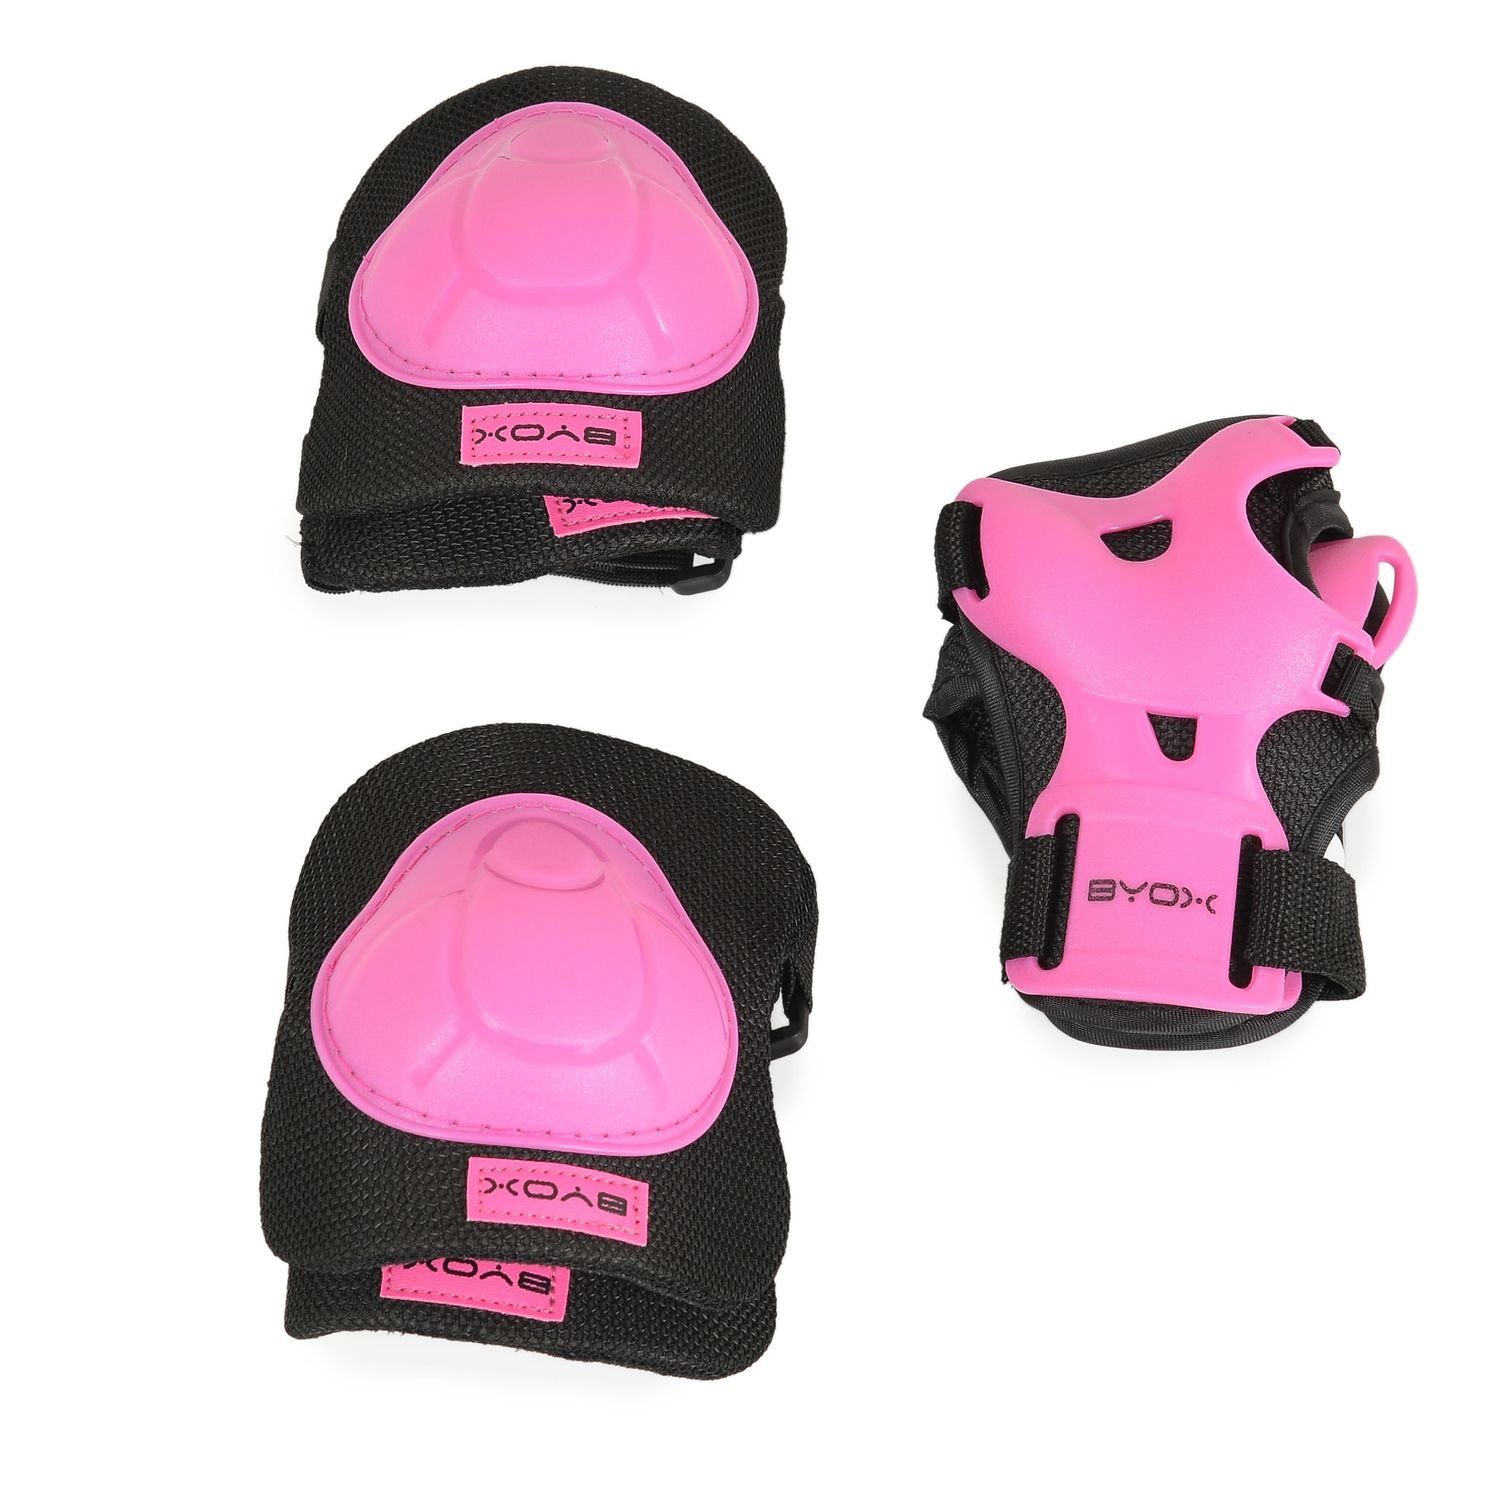 Protektoren und Protektoren-Set Knieschützer Byox H110, Schutzausrüstung Handgelenk- Ellenbogen- pink